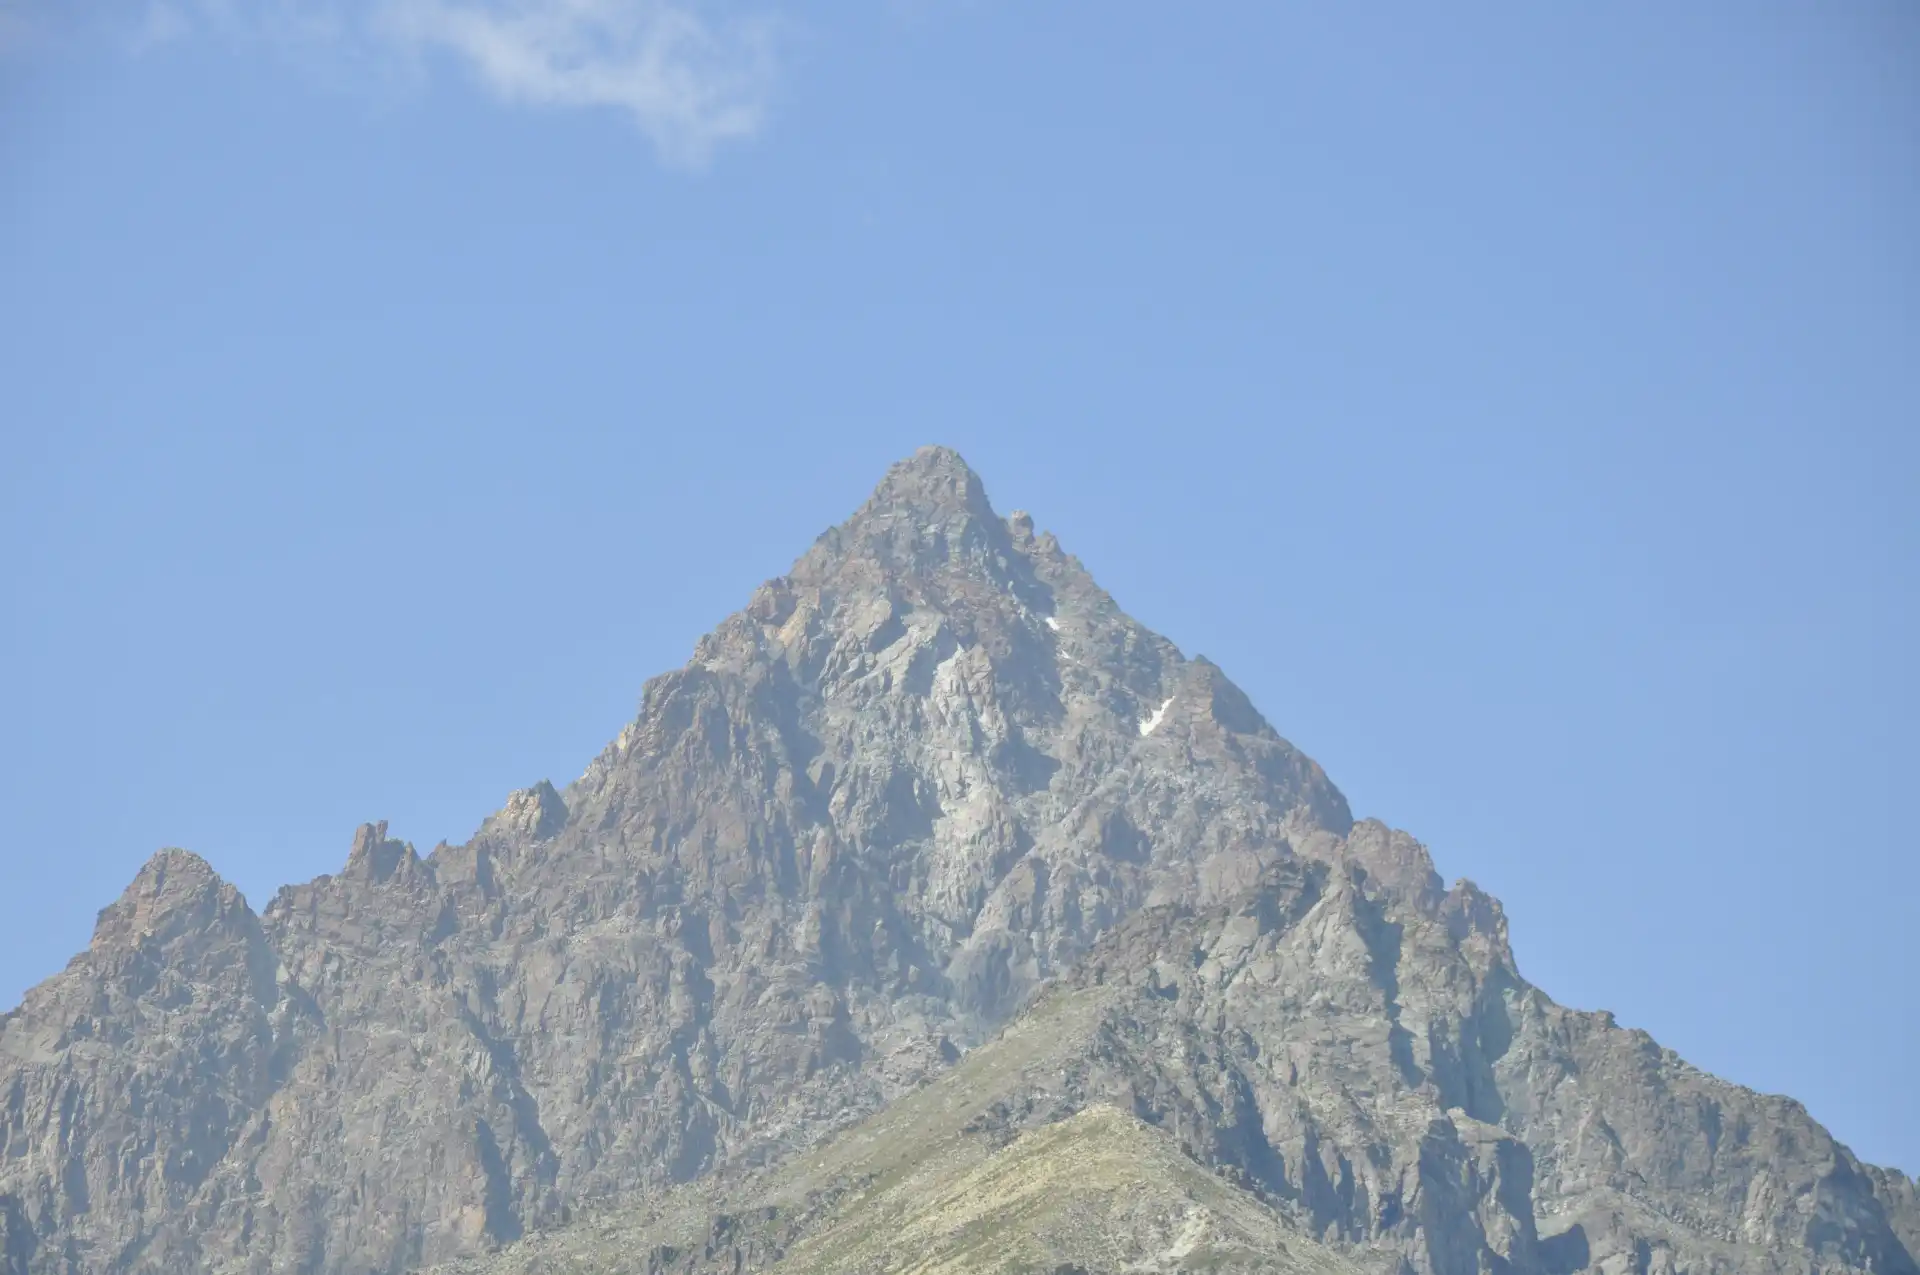 Quattro passi in montagna - Salita al Monte Tivoli da Crissolo, valle Po